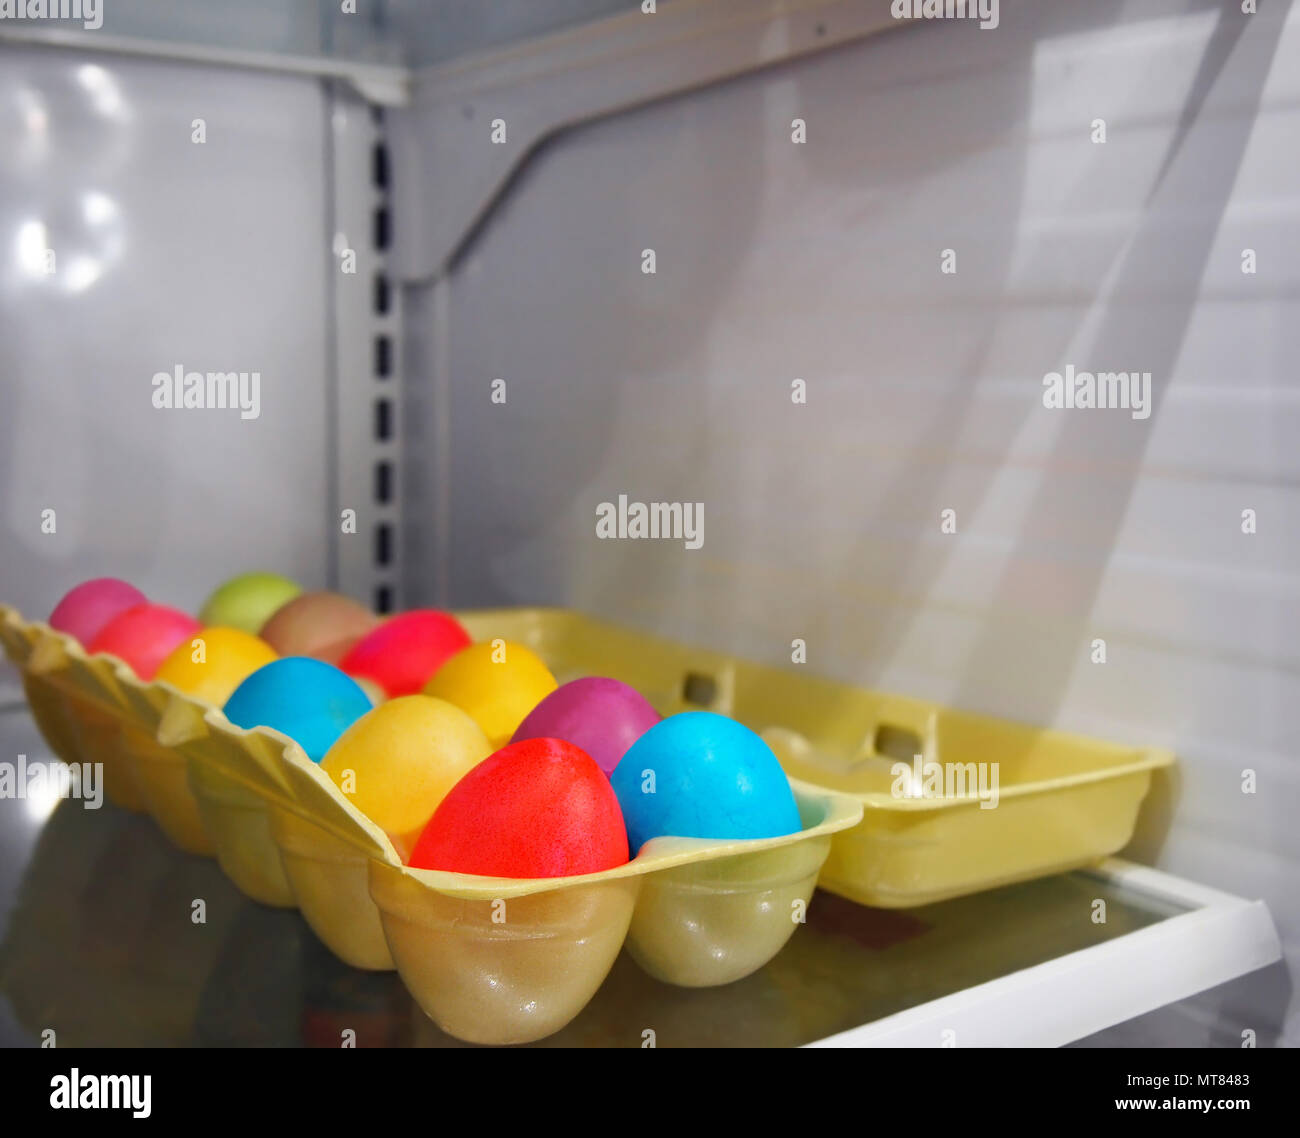 Un uovo di polistirolo si siede aperto in un frigorifero con una dozzina di tinte colorate le uova sode per le vacanze di Pasqua. Foto Stock